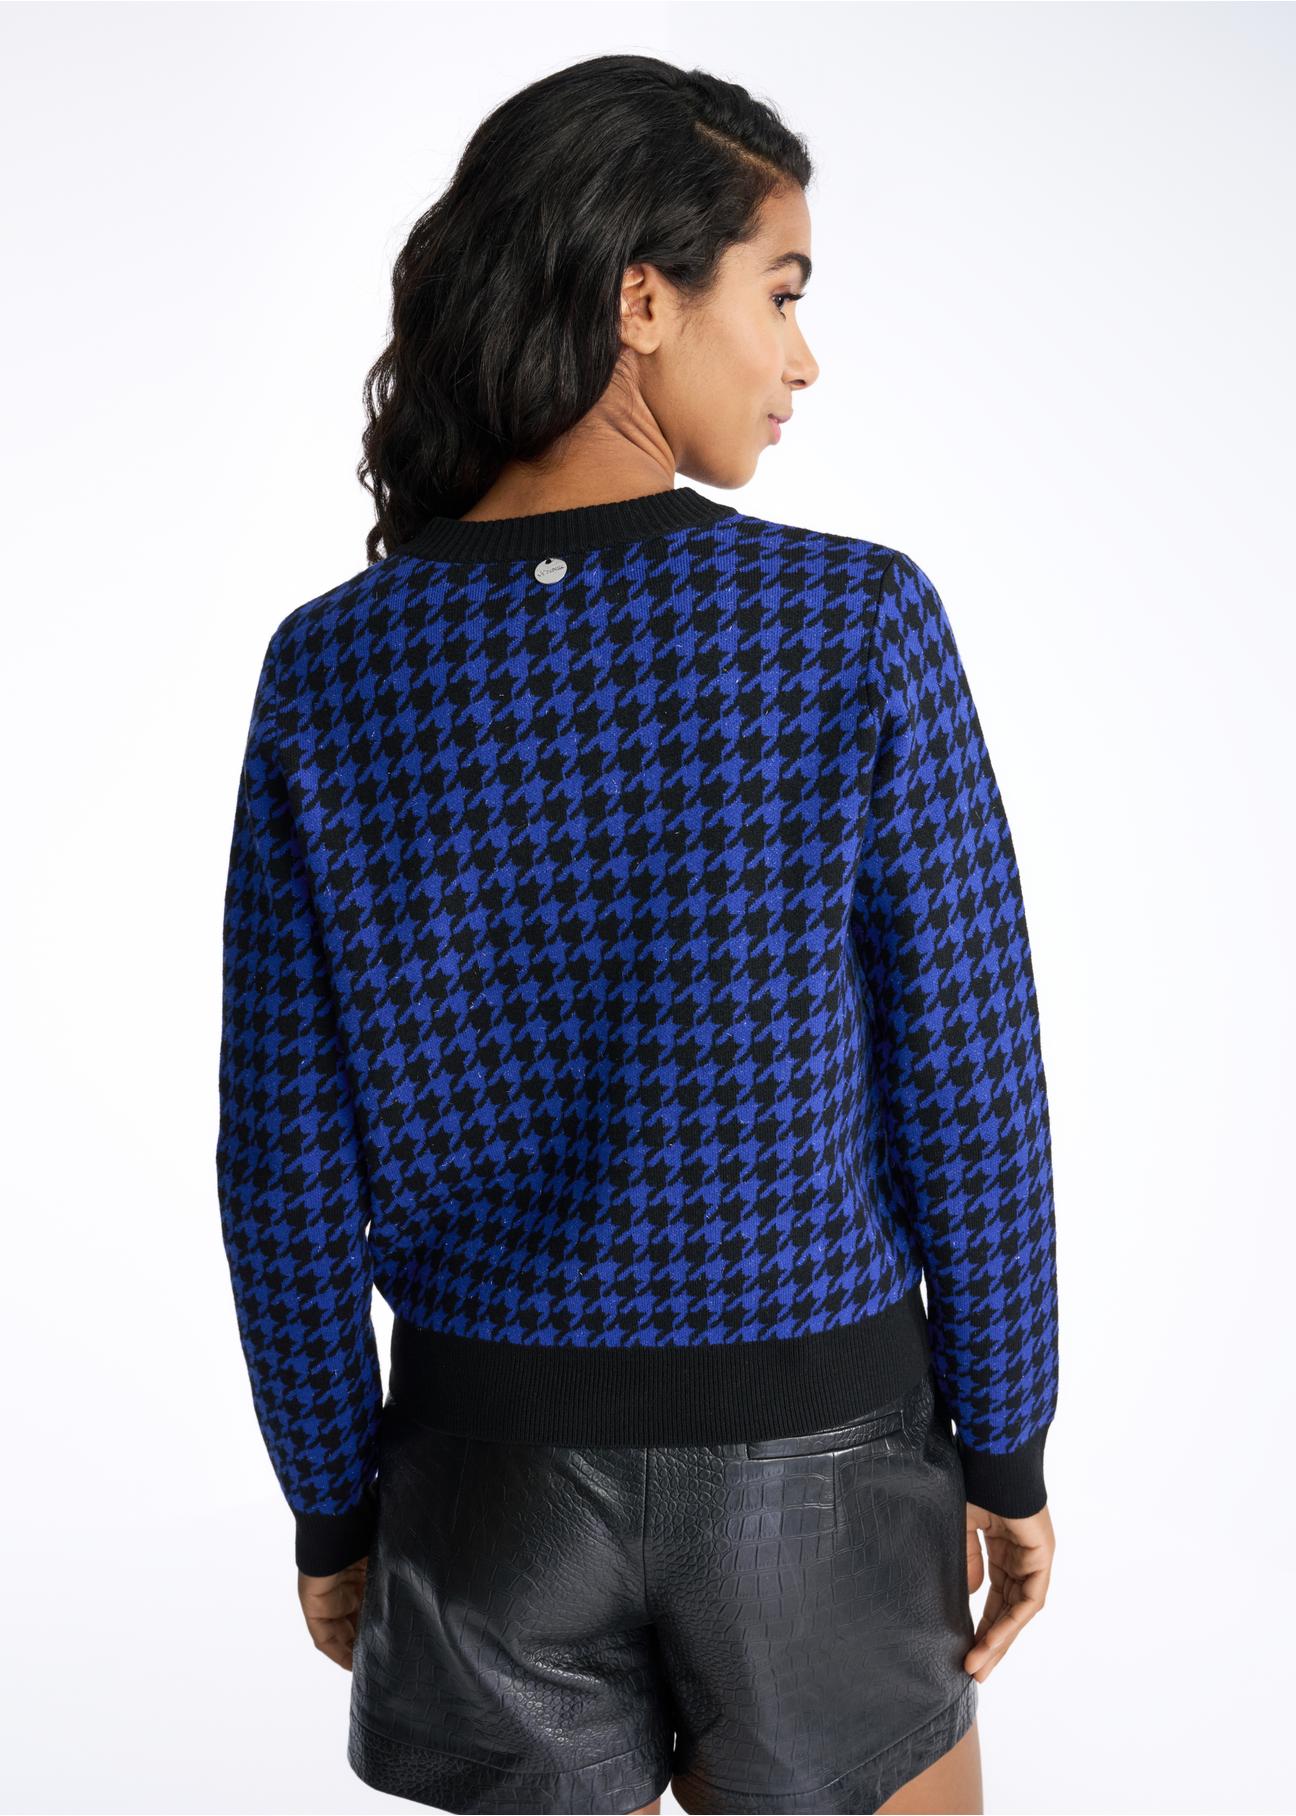 Sweter damski w pepitkę KARDT-0031-61(Z22)